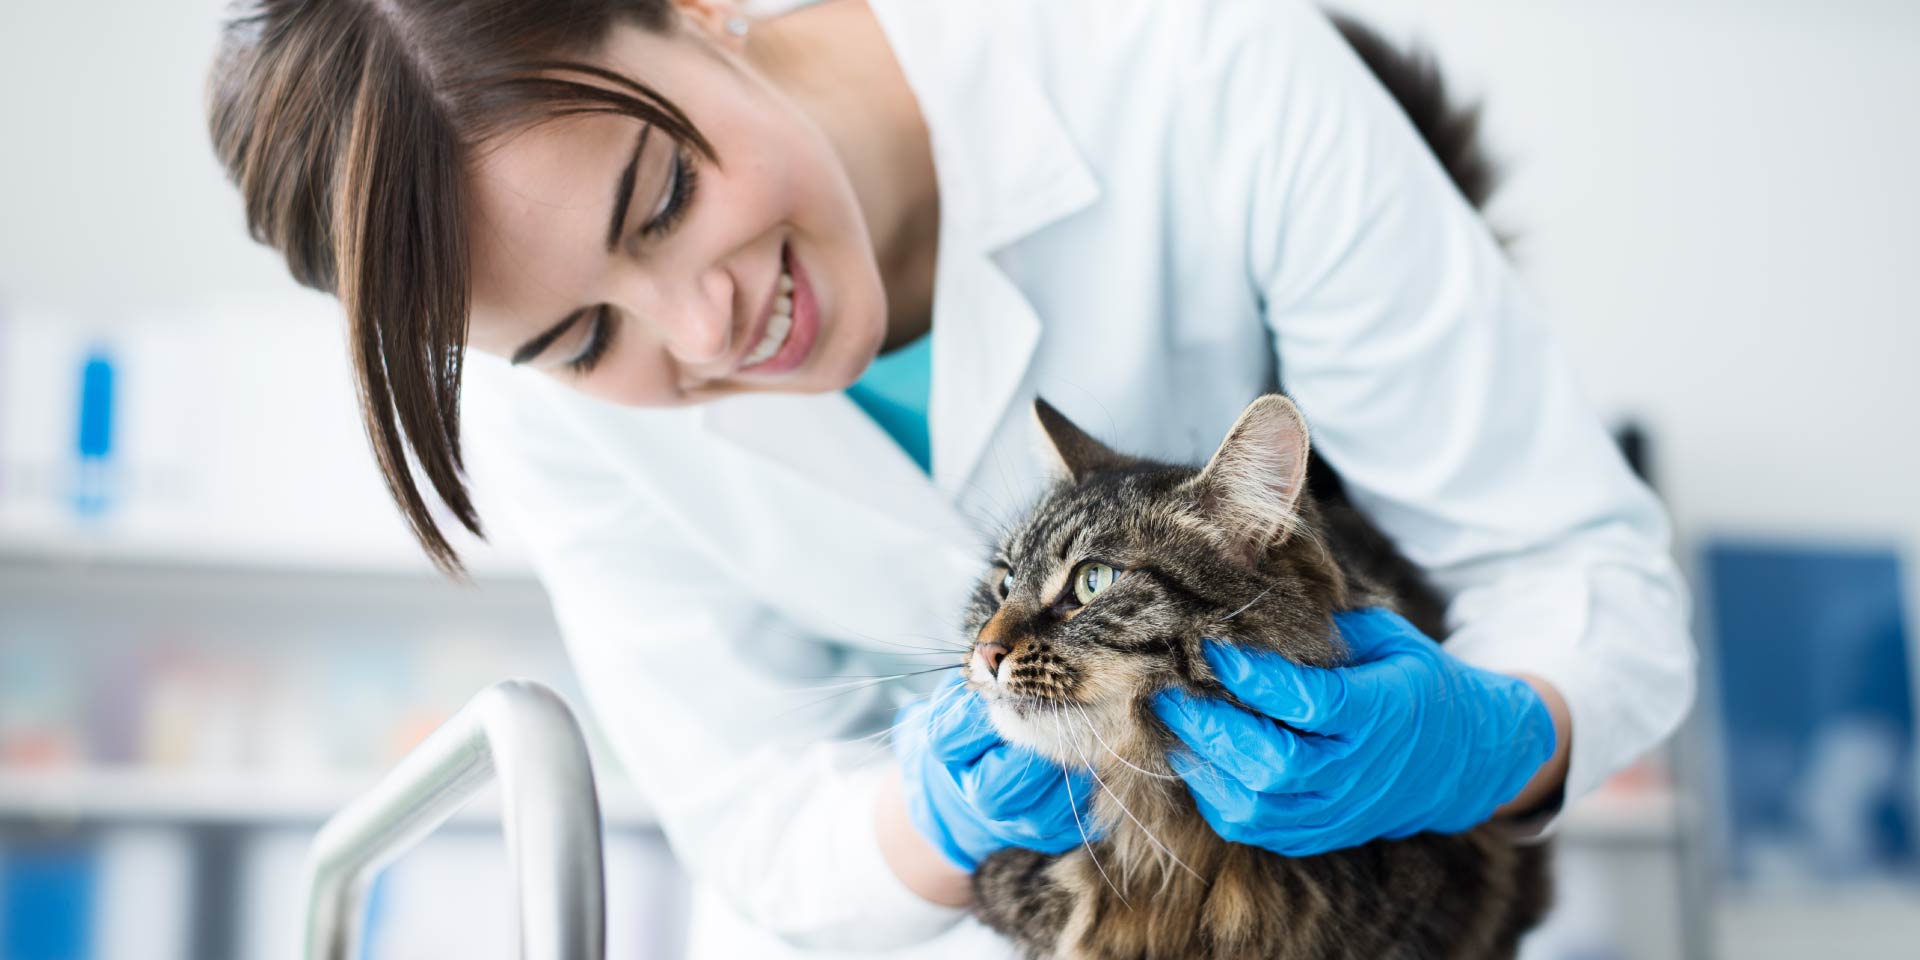 Infezioni chirurgiche: microbiota intestinale del gatto “fonte” di probiotici promettenti